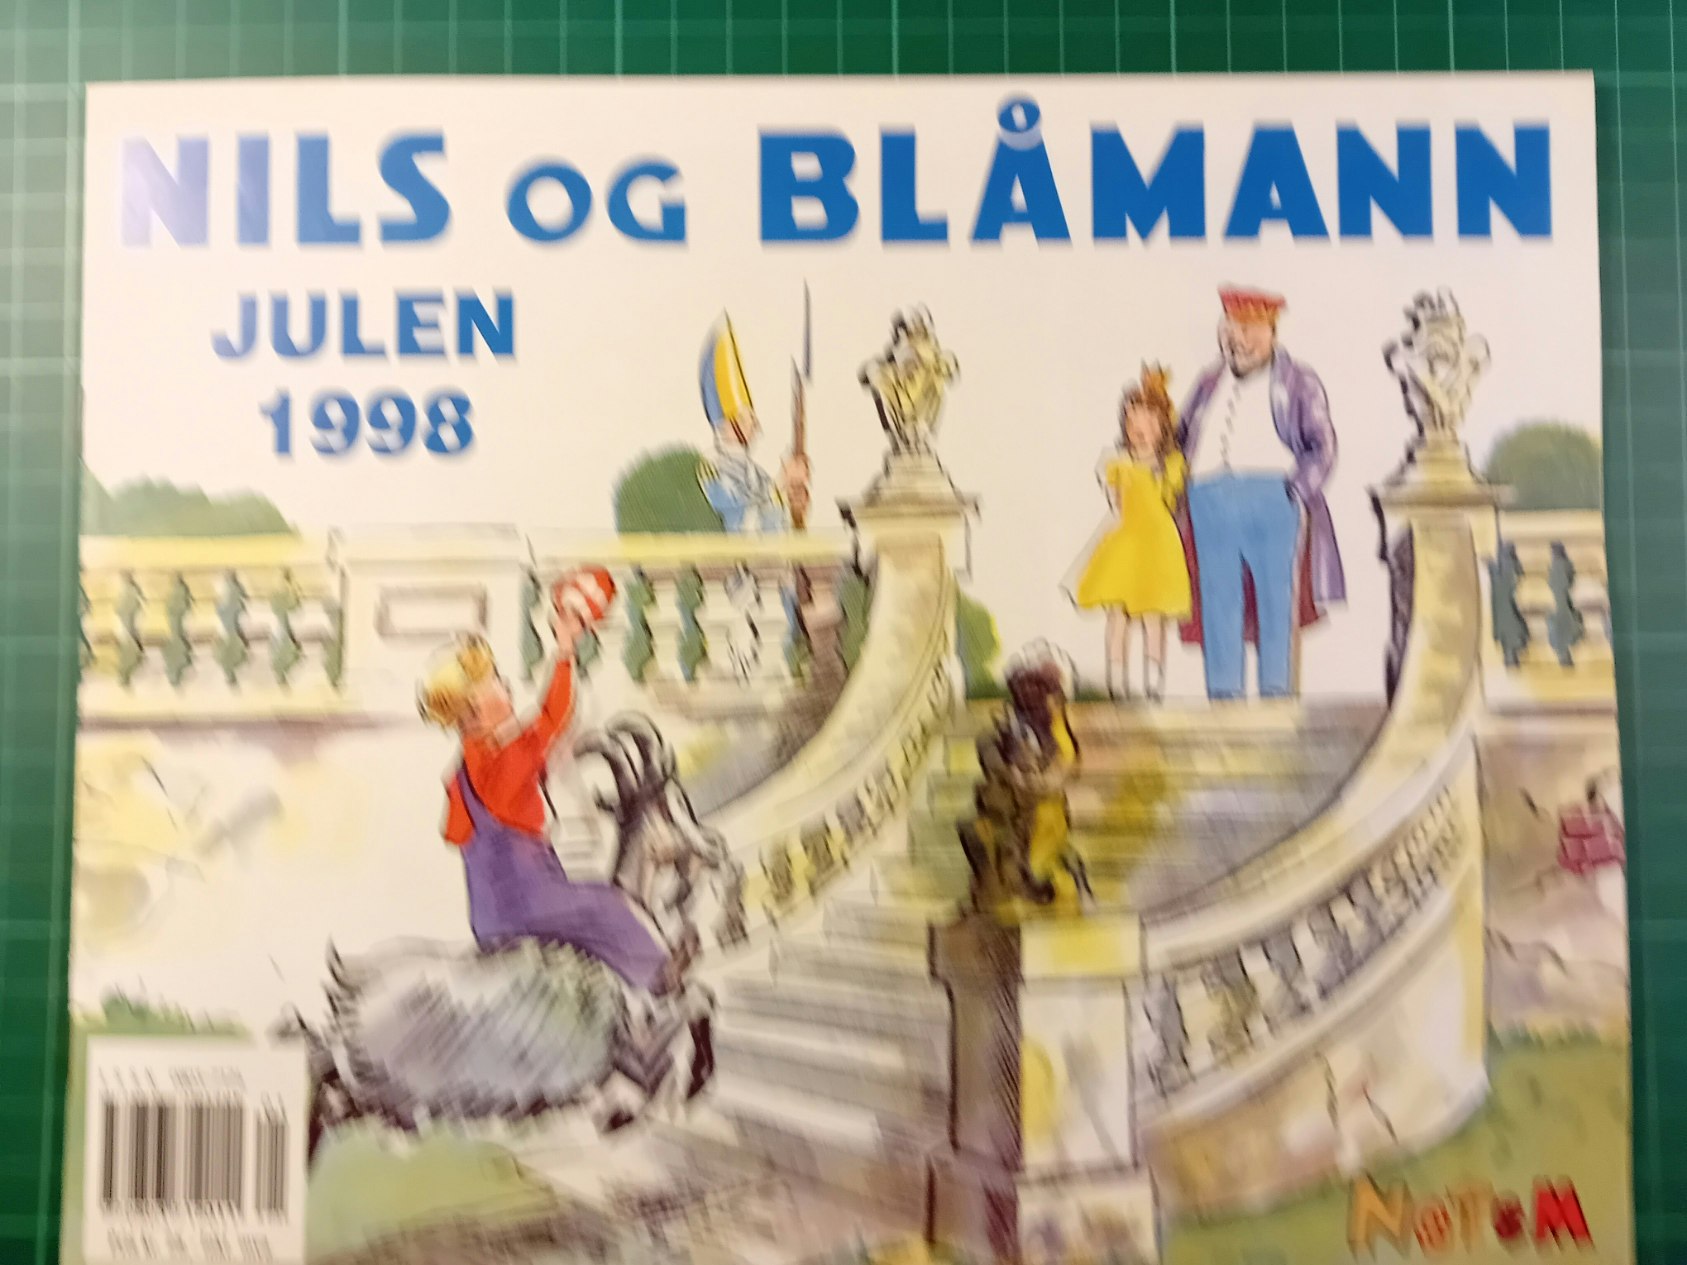 Nils og Blåmann Julen 1998